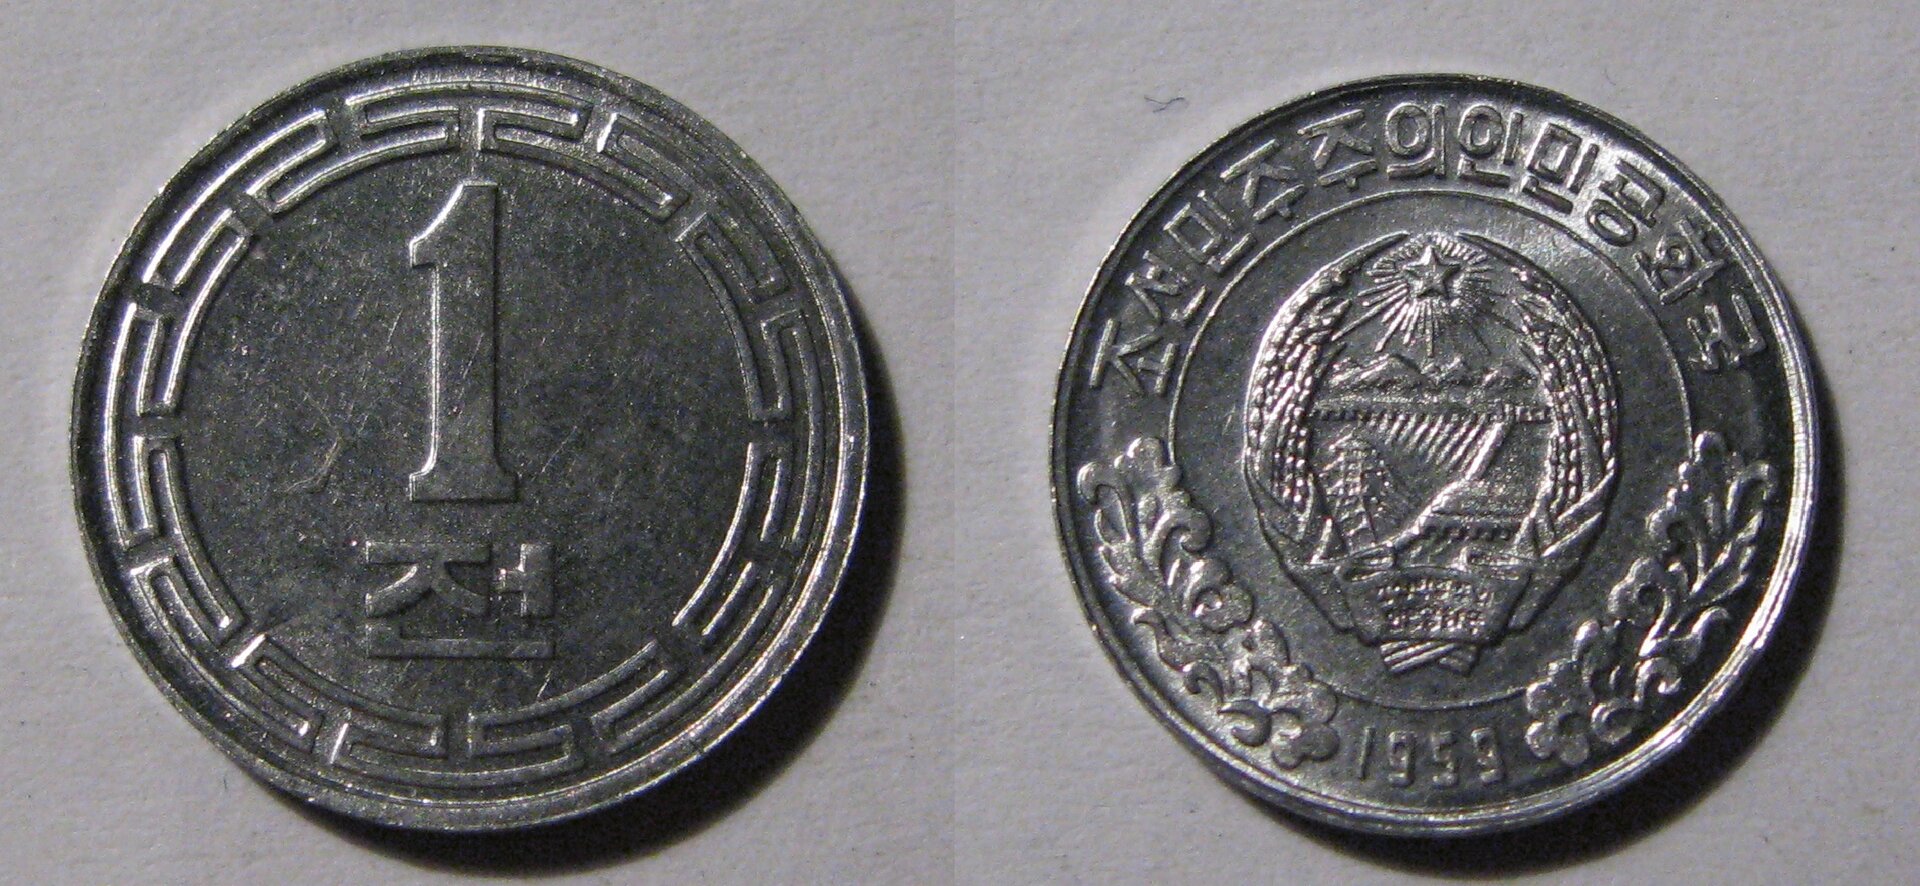 DPRK 1 Chon Coin.jpg